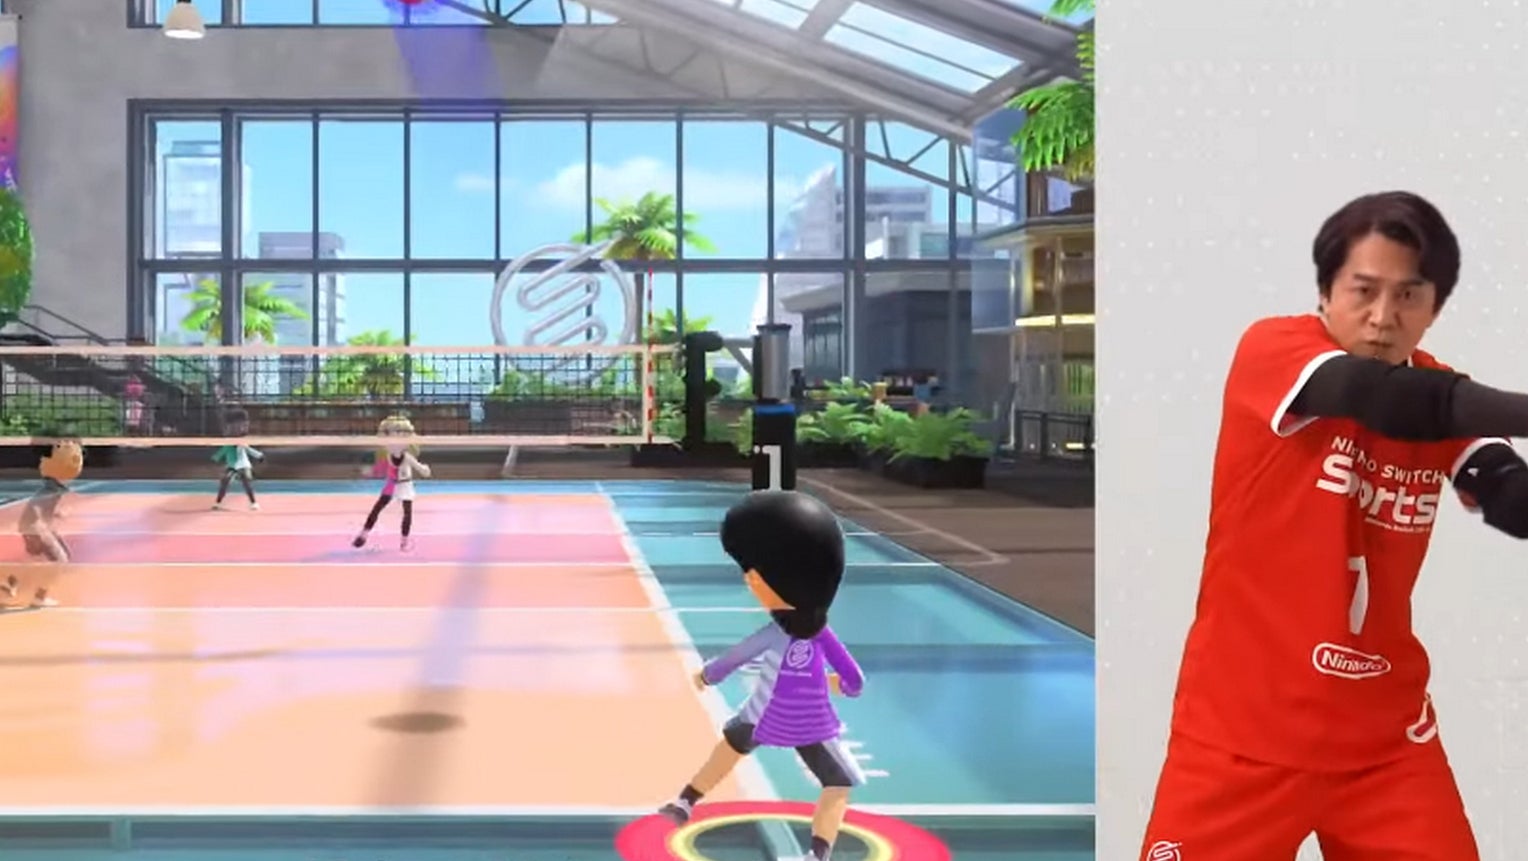 Bilder zu Nintendo Switch Sports angekündigt - Wii Sports geht auf der Switch weiter